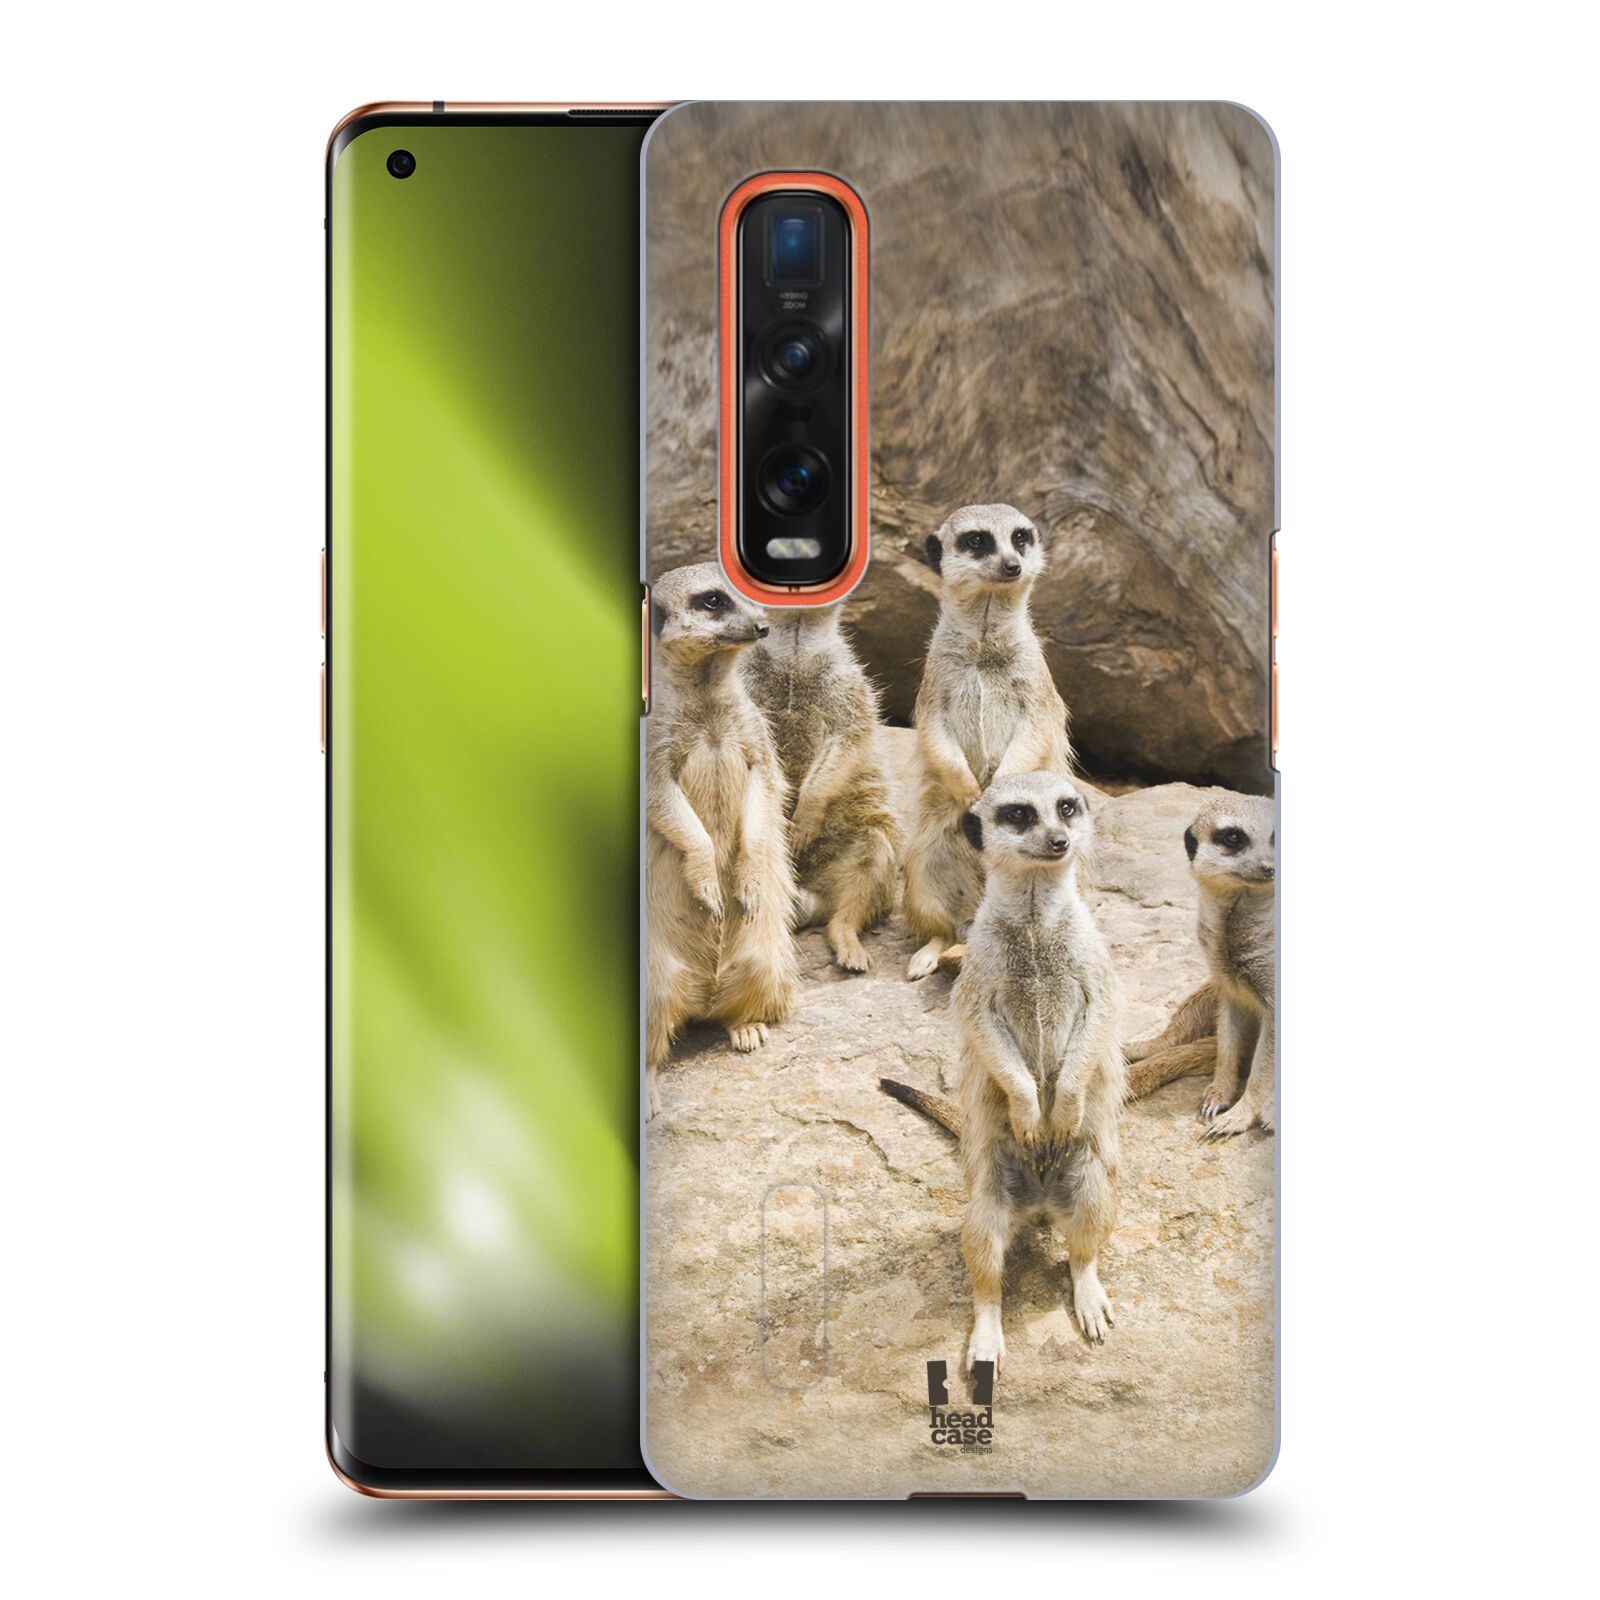 Zadní obal pro mobil Oppo Find X2 PRO - HEAD CASE - Svět zvířat roztomilé surikaty